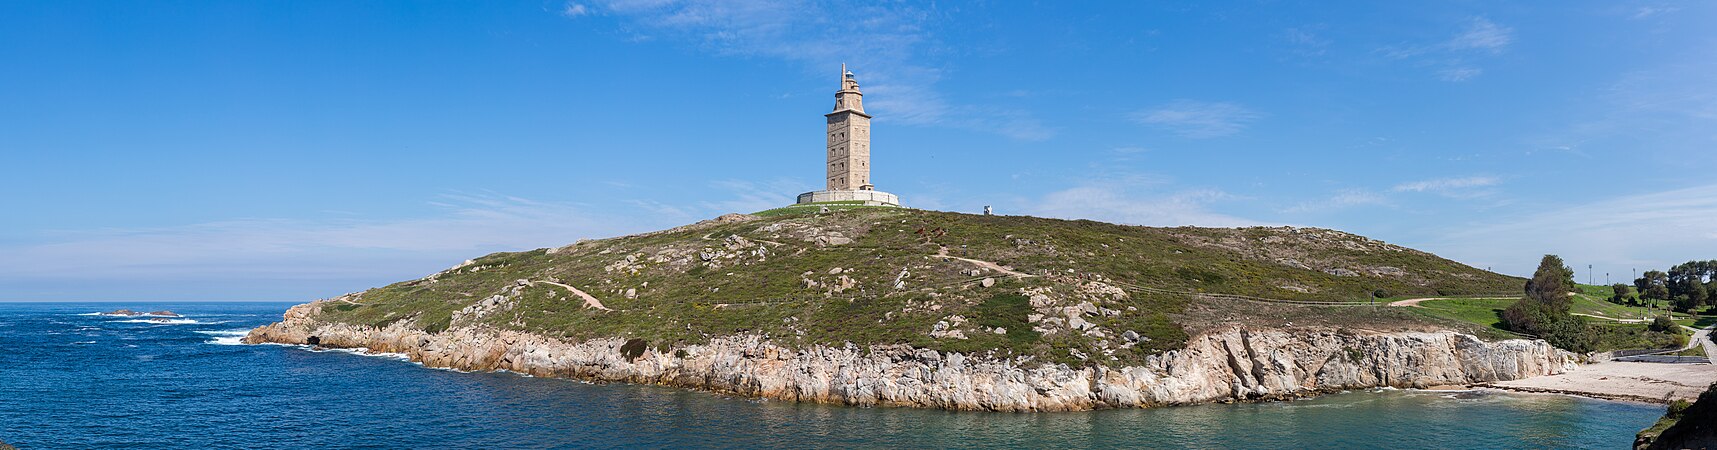 图为埃库莱斯塔的景观，位于西班牙加利西亚拉科鲁尼亚中心附近。这座高55米的塔是一座古罗马灯塔，是仍在使用的古罗马灯塔中最古老的（差不多1900年），也是西班牙第二高的灯塔（最高的是奇皮奥纳灯塔）。此灯塔在1791年时被重新使用，并在2009年被列为联合国教科文组织世界文化遗产。